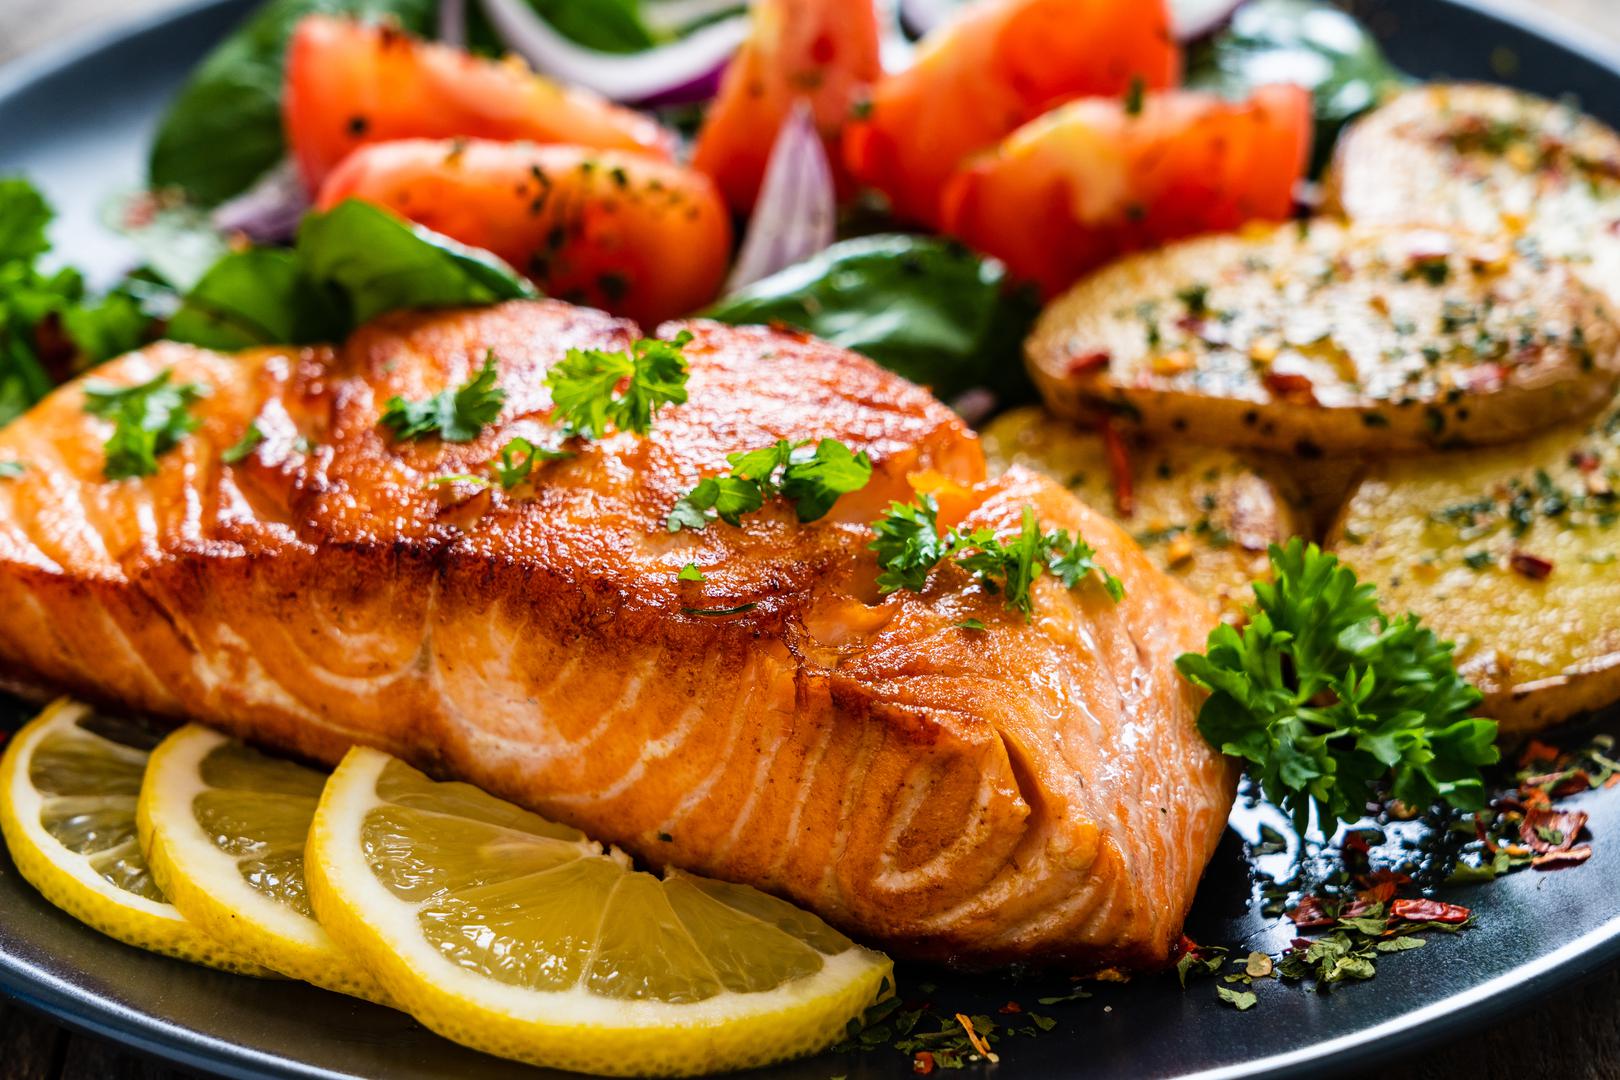 Nadalje, masna riba izvrstan je izvor omega-3 masnih kiselina, koje se povezuju s nižim stopama smrtnosti od glavnih uzroka, uključujući kardiovaskularne bolesti, rak i Alzheimerovu bolest. Istraživanja su dokazala vezu između omega-3 masnih kiselina i smanjene ekspresije proupalnih markera. Ipak, važno je voditi računa o veličini porcija kada jedete masnu ribu, jer previše čak i zdravih masnoća može imati negativne rezultate.